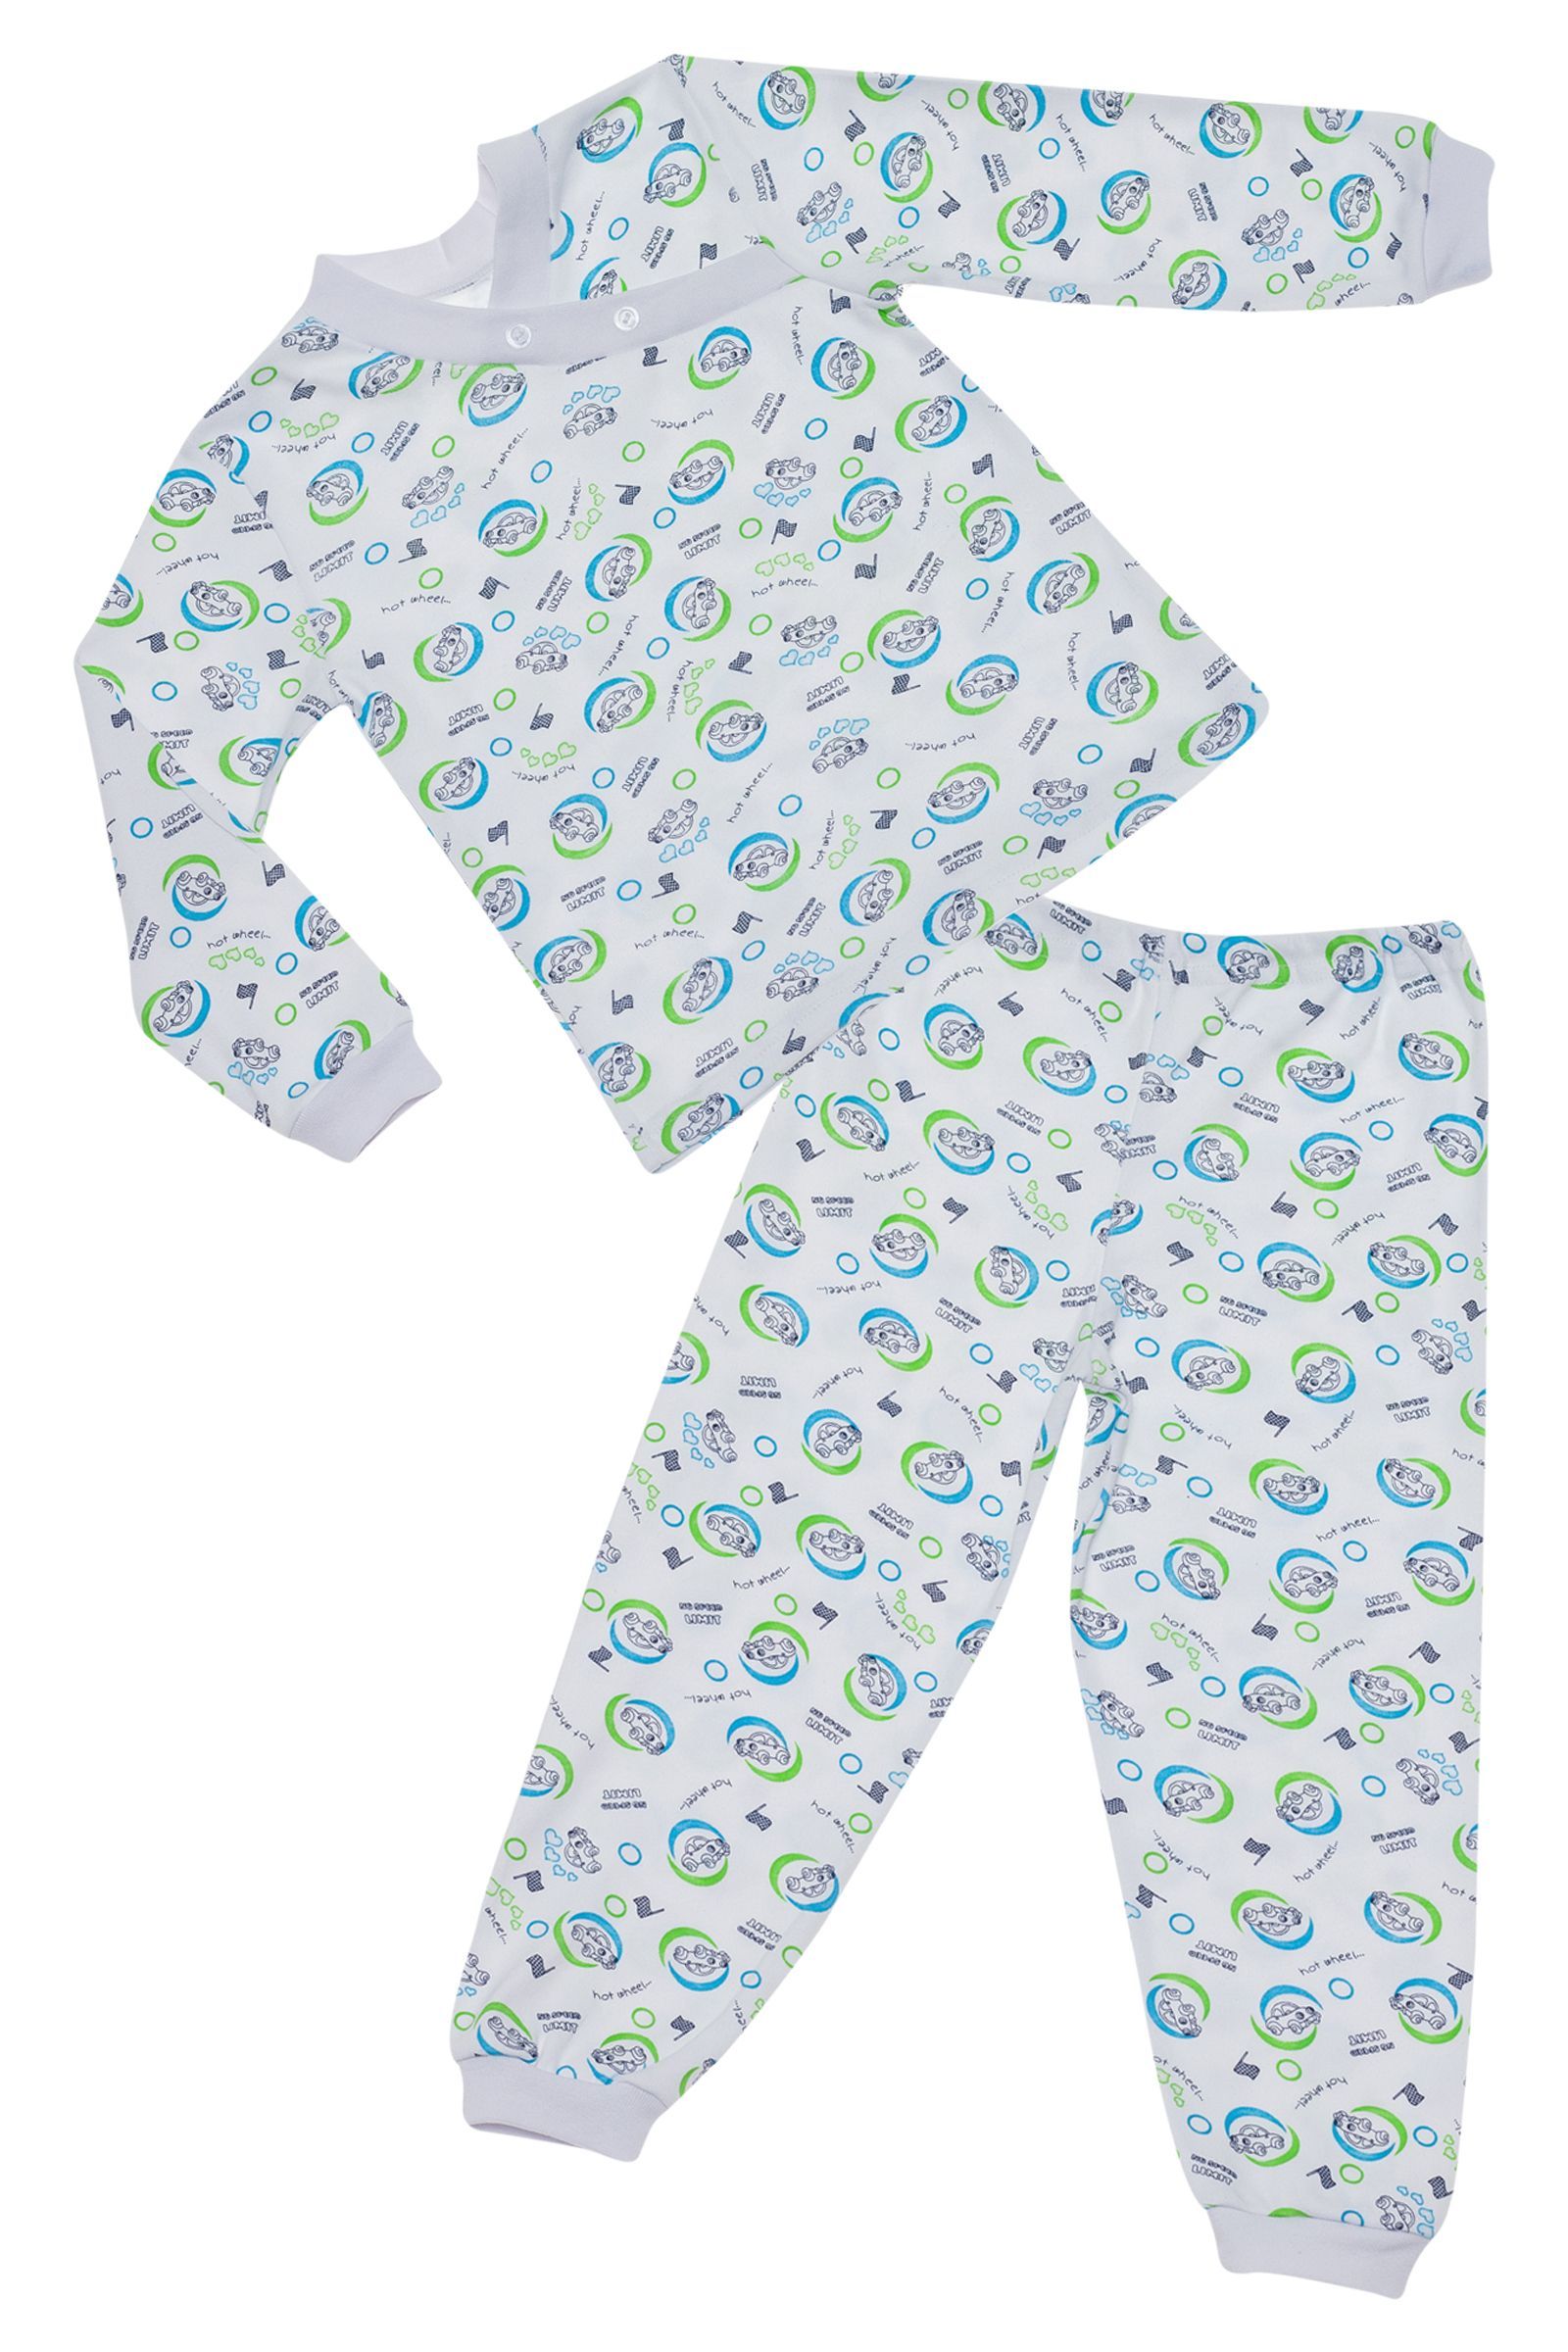 Пижама-ПЖ01-622 оптом от производителя детской одежды 'Алёна'